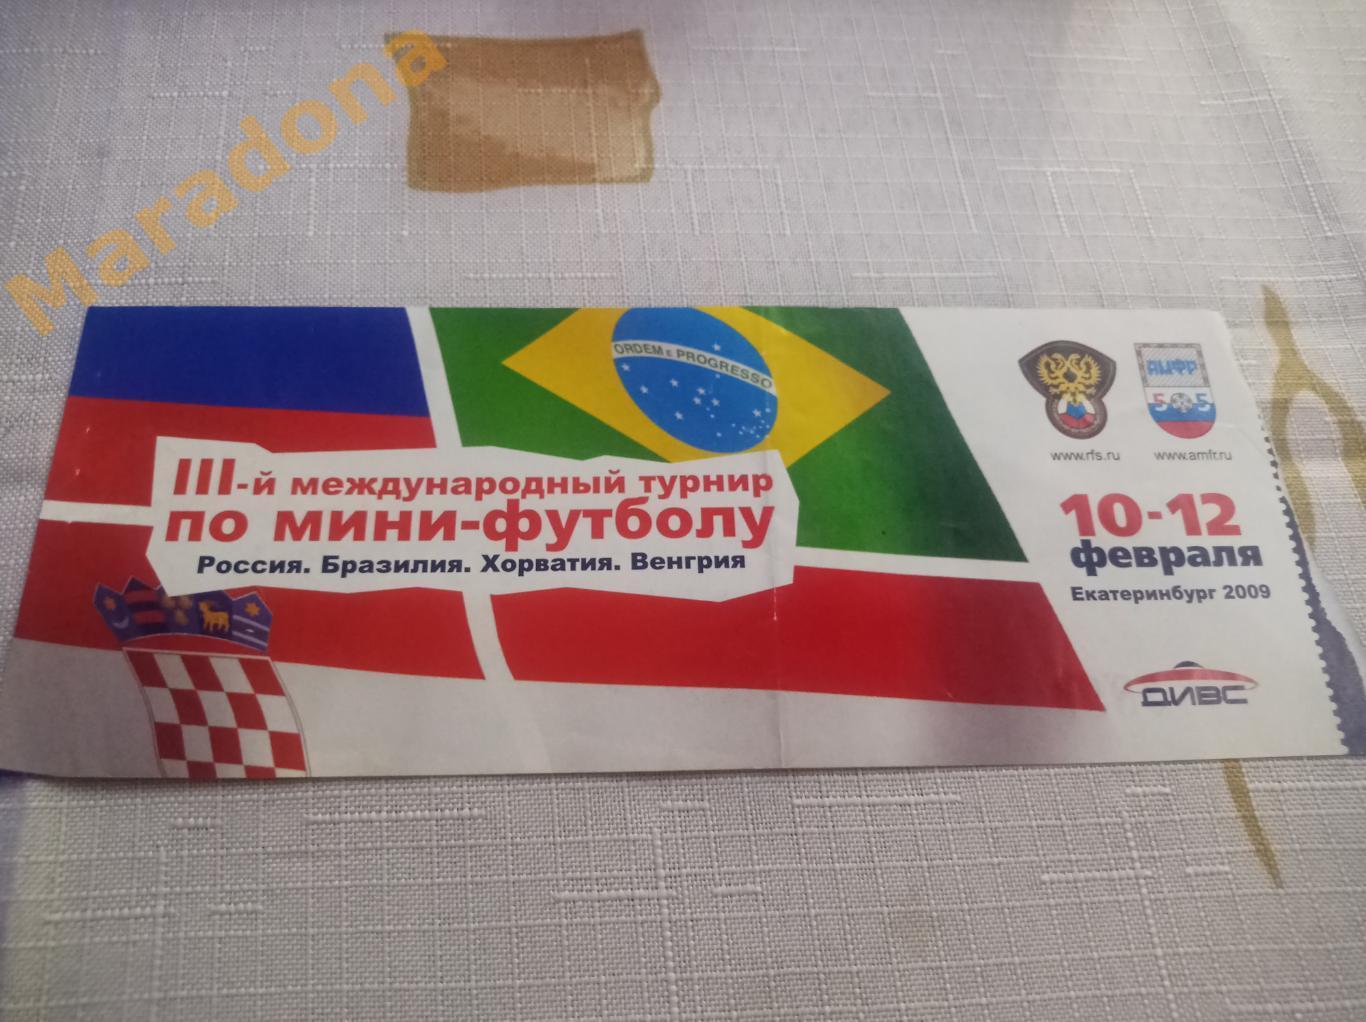 3 международный турнир 2009 Екатеринбург Хорватия - Венгрия + Россия - Бразилия 1